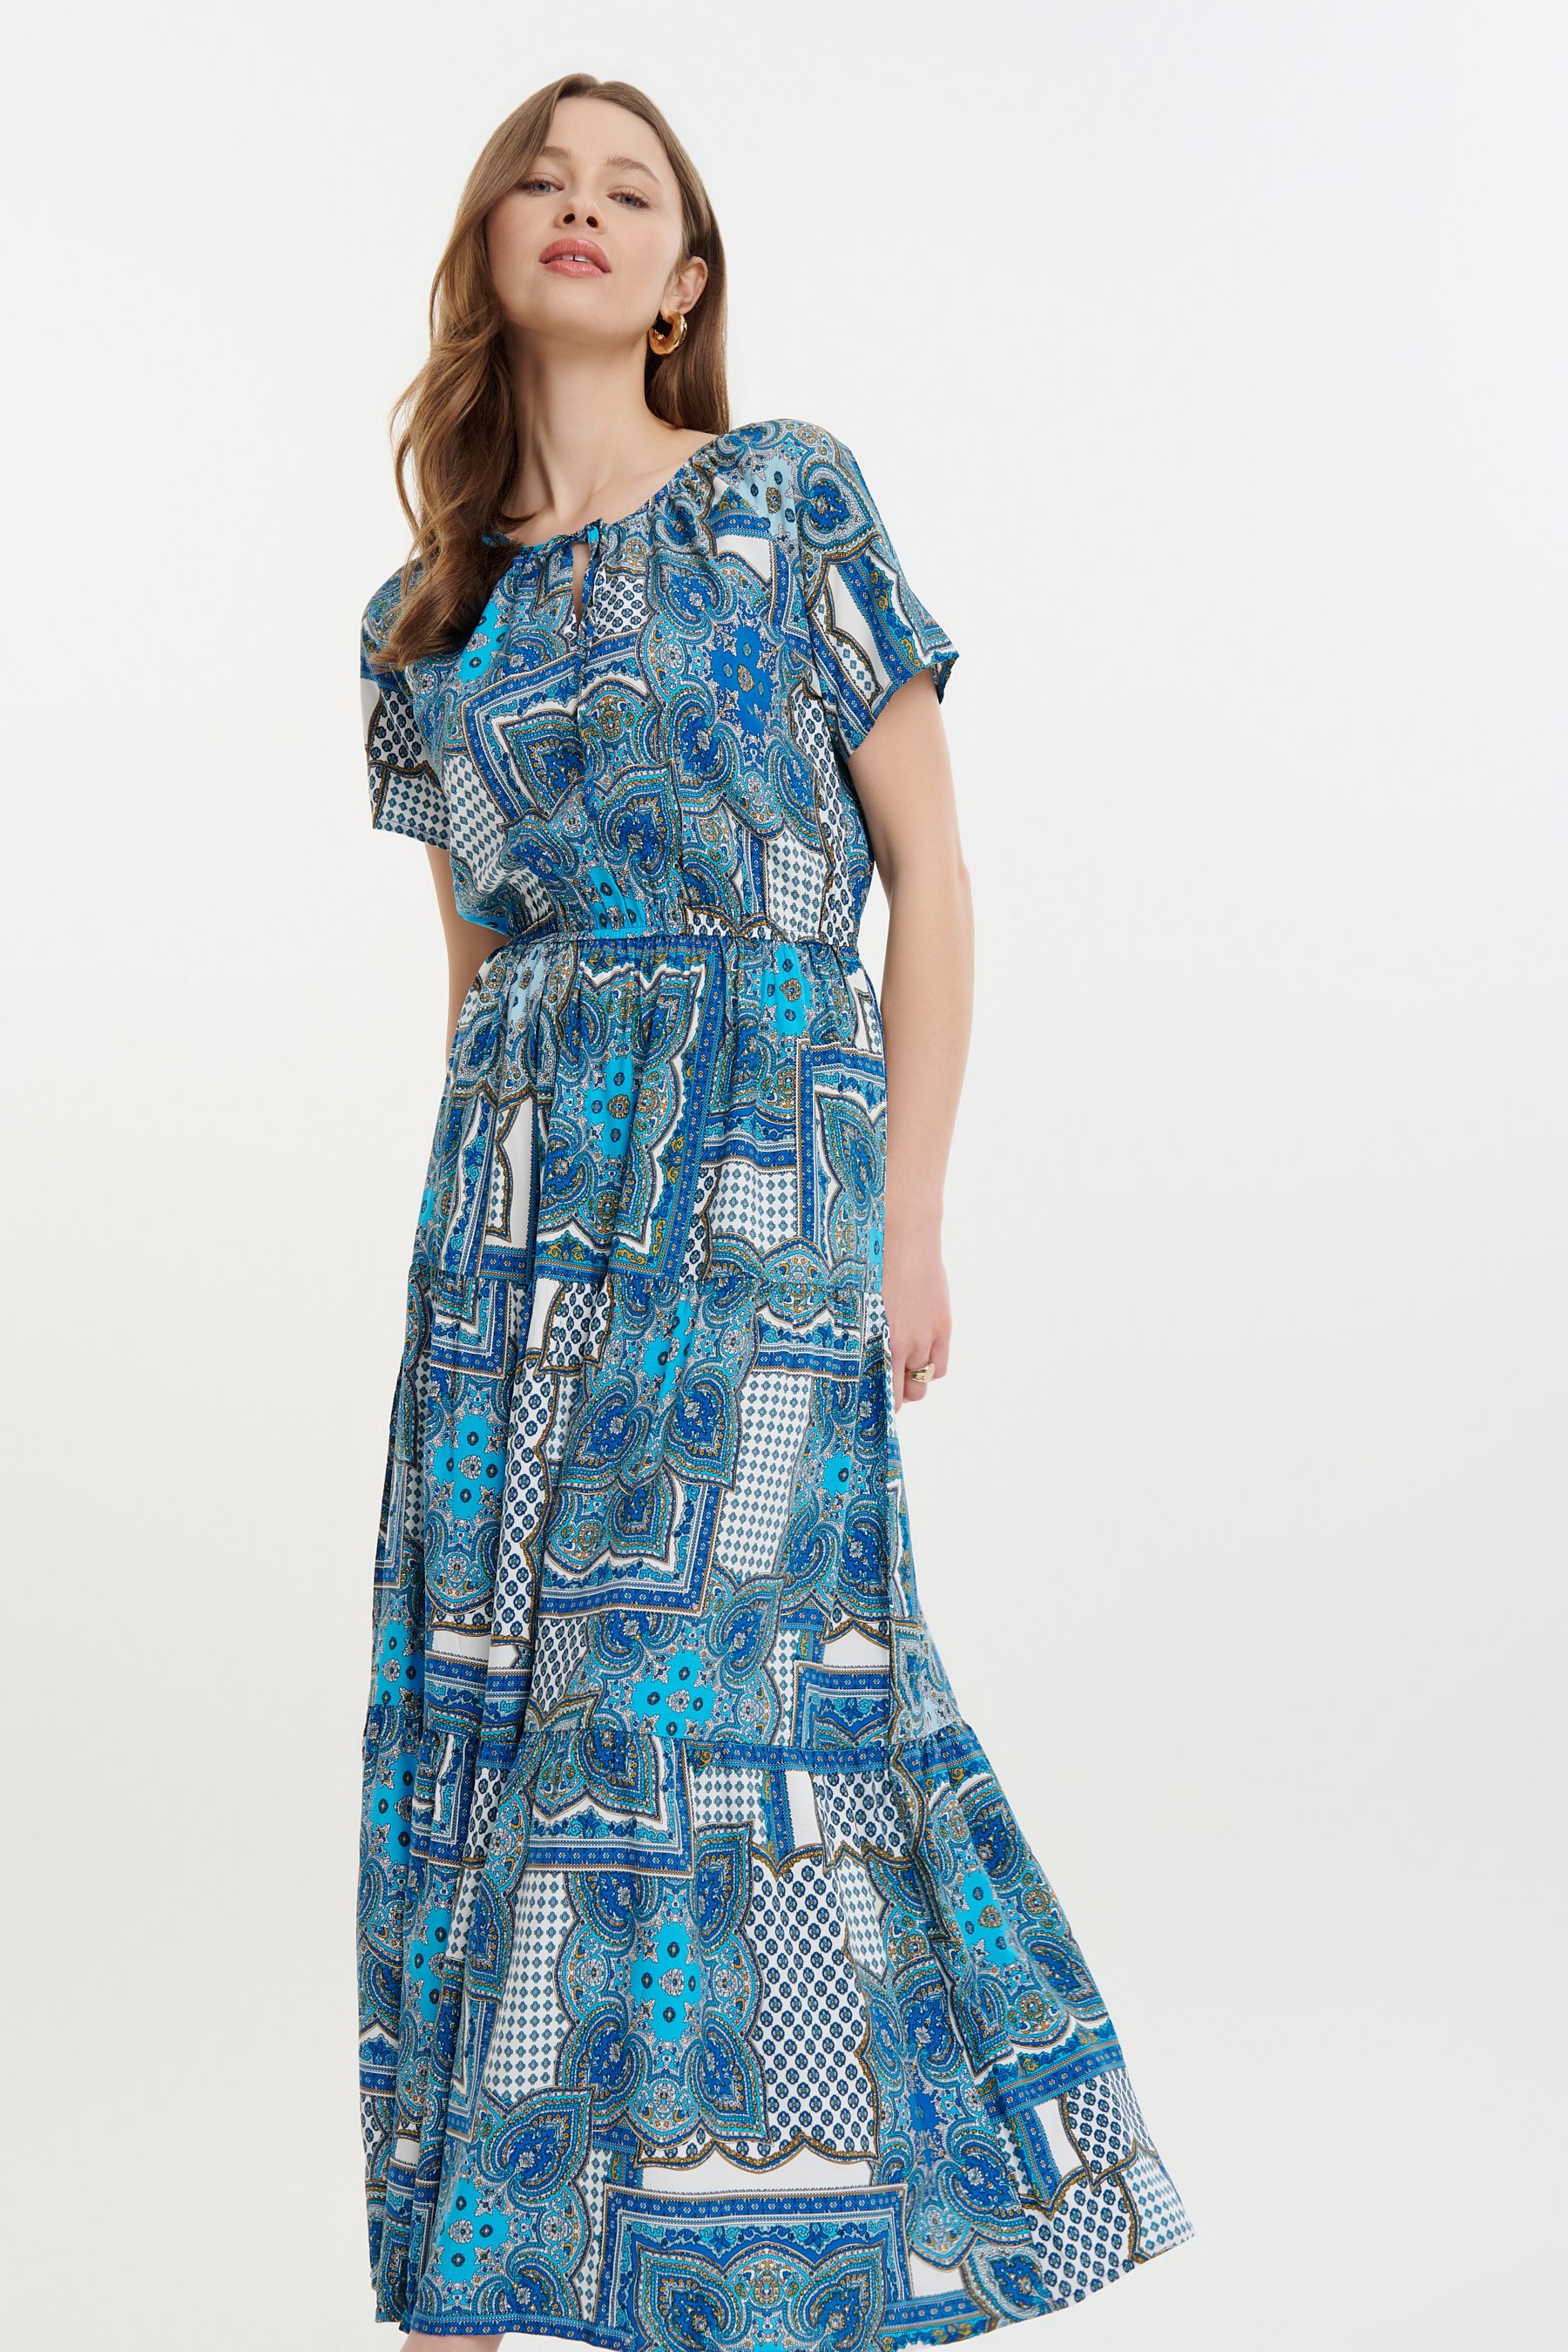 Błękitna sukienka maxi z wiązaniem przy dekolcie